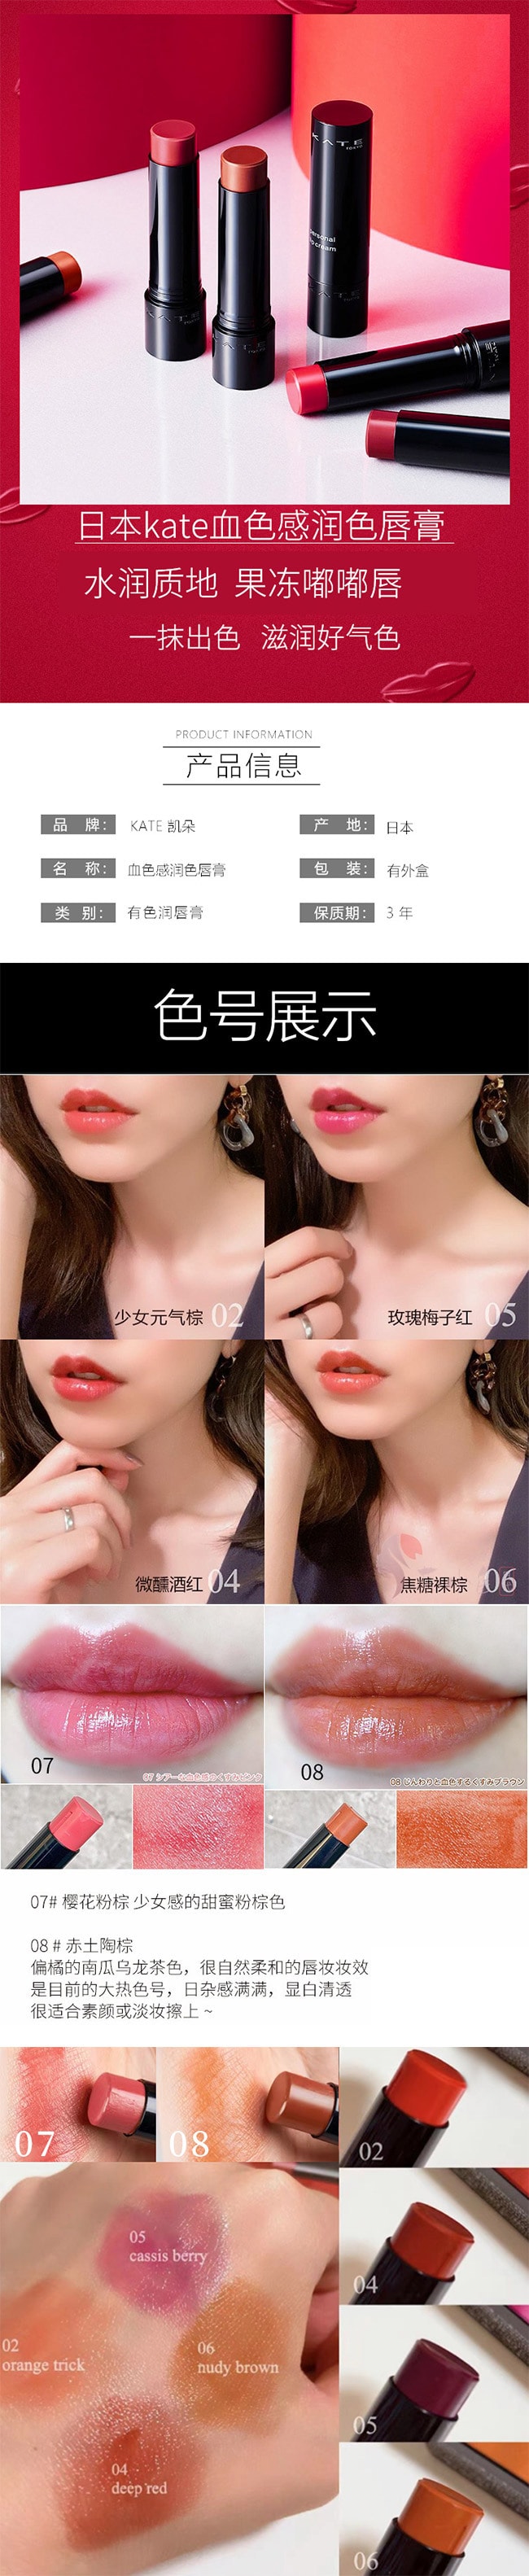 【日本直效郵件】KATE 凱朵 CC有色潤唇膏 3.7g #08